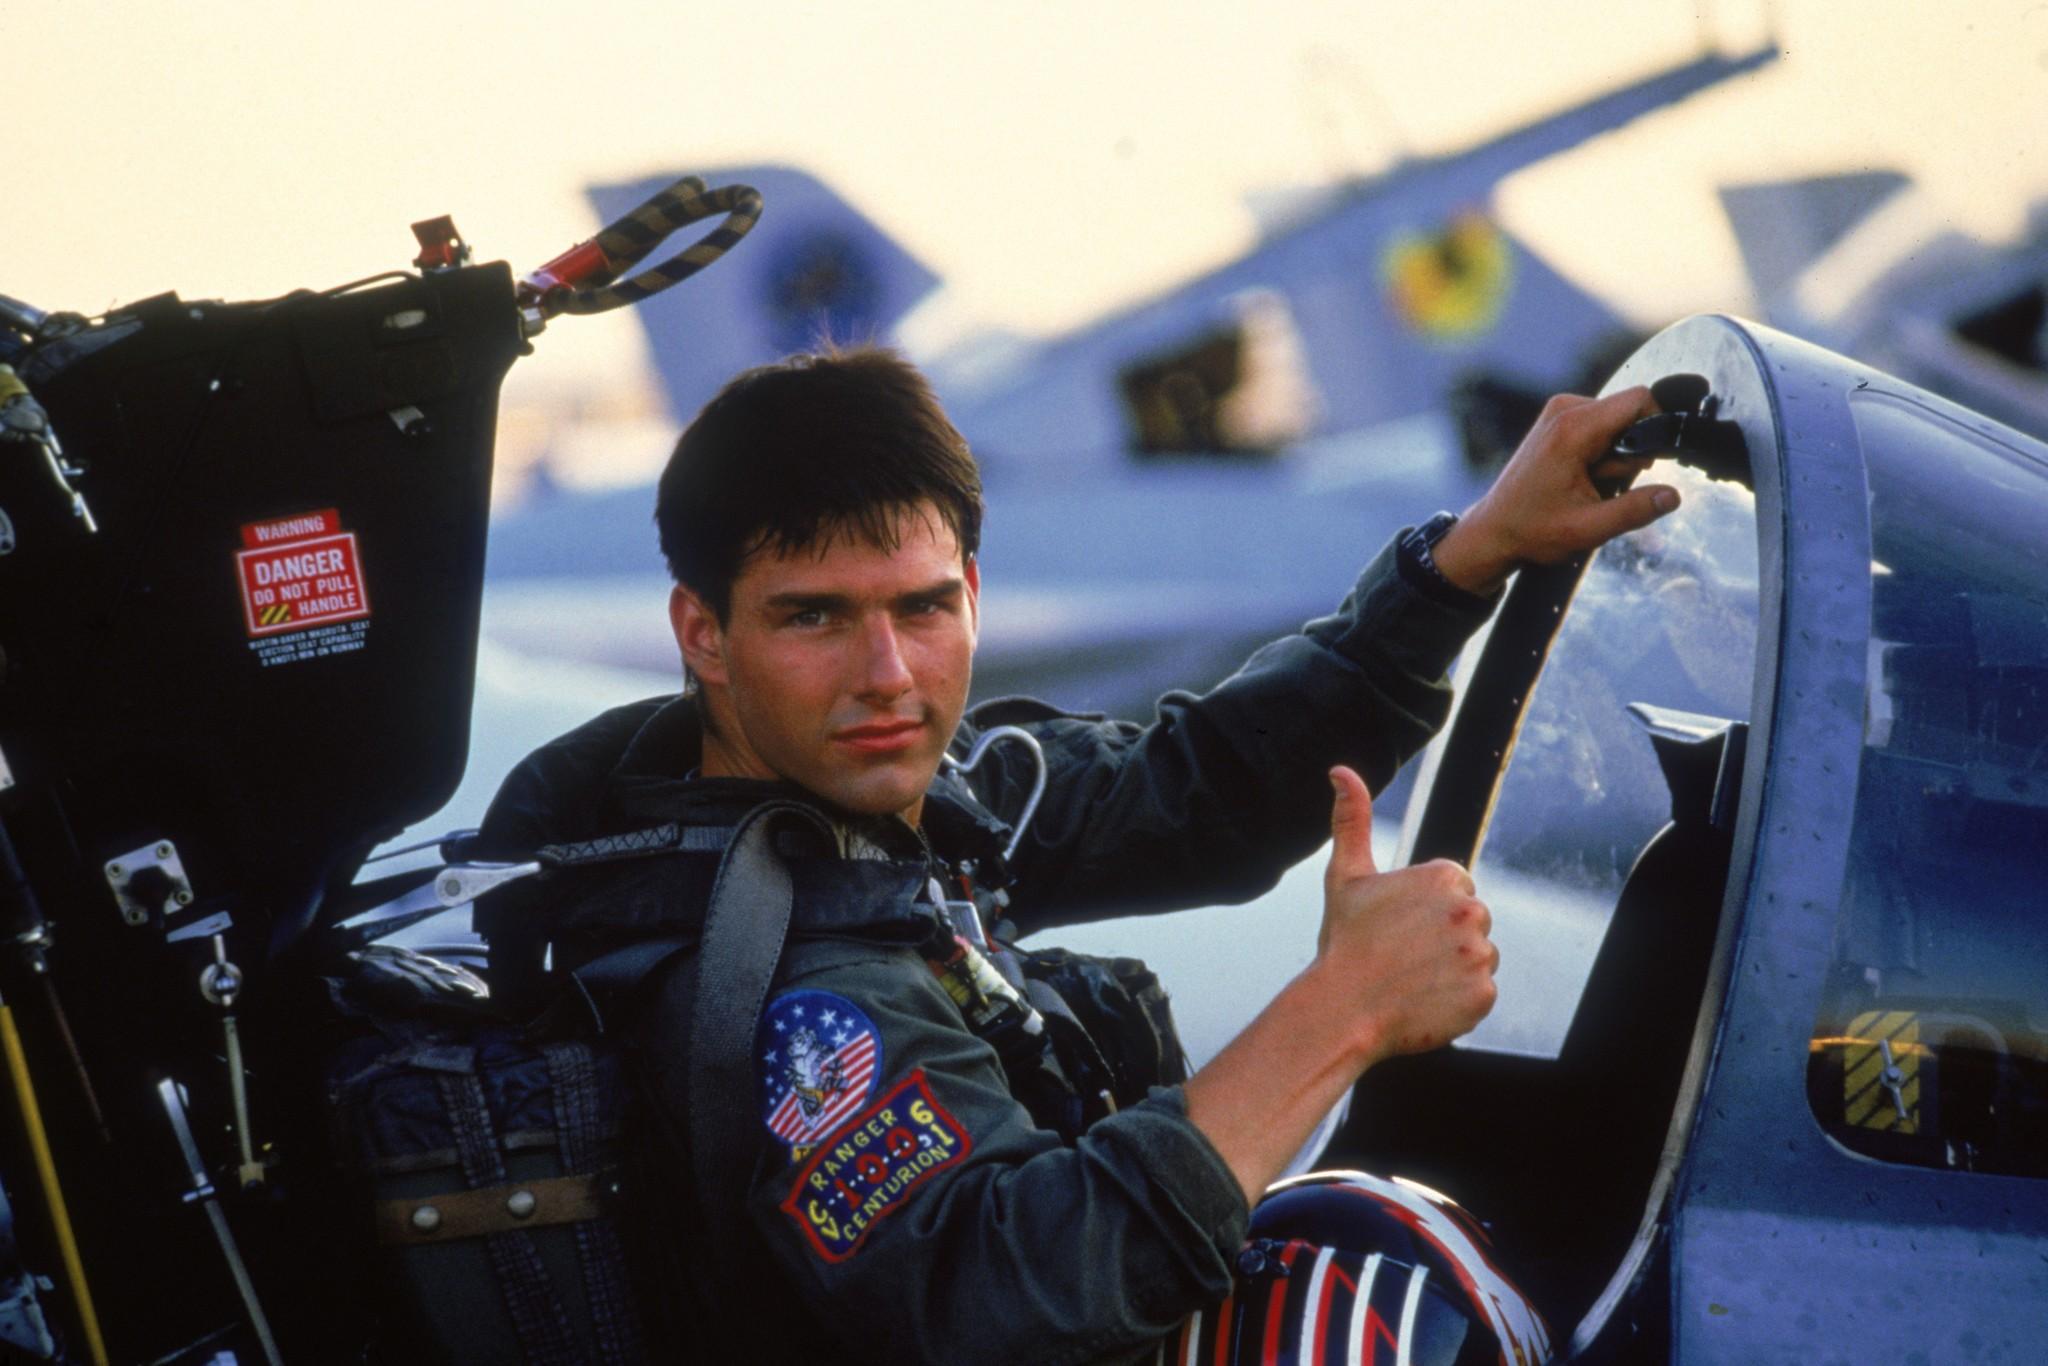 Nihayet o kare geldi! Tom Cruise Top Gun 2’den kare paylaştı!